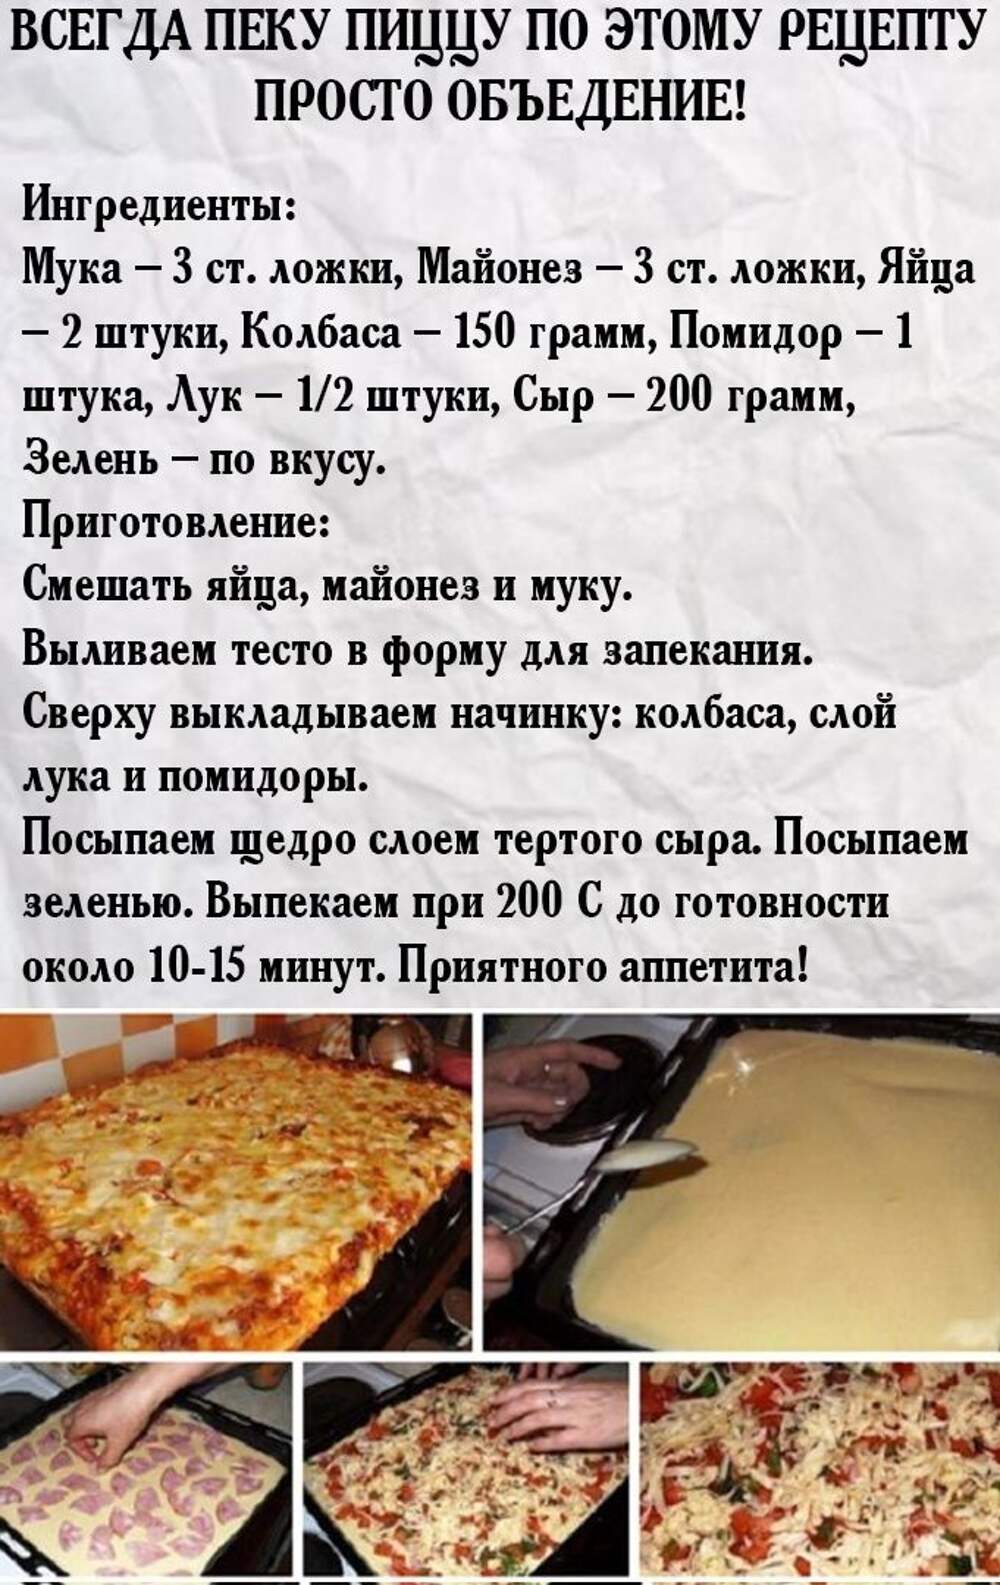 пицца рецепт быстрого приготовления в домашних условиях в духовке (120) фото